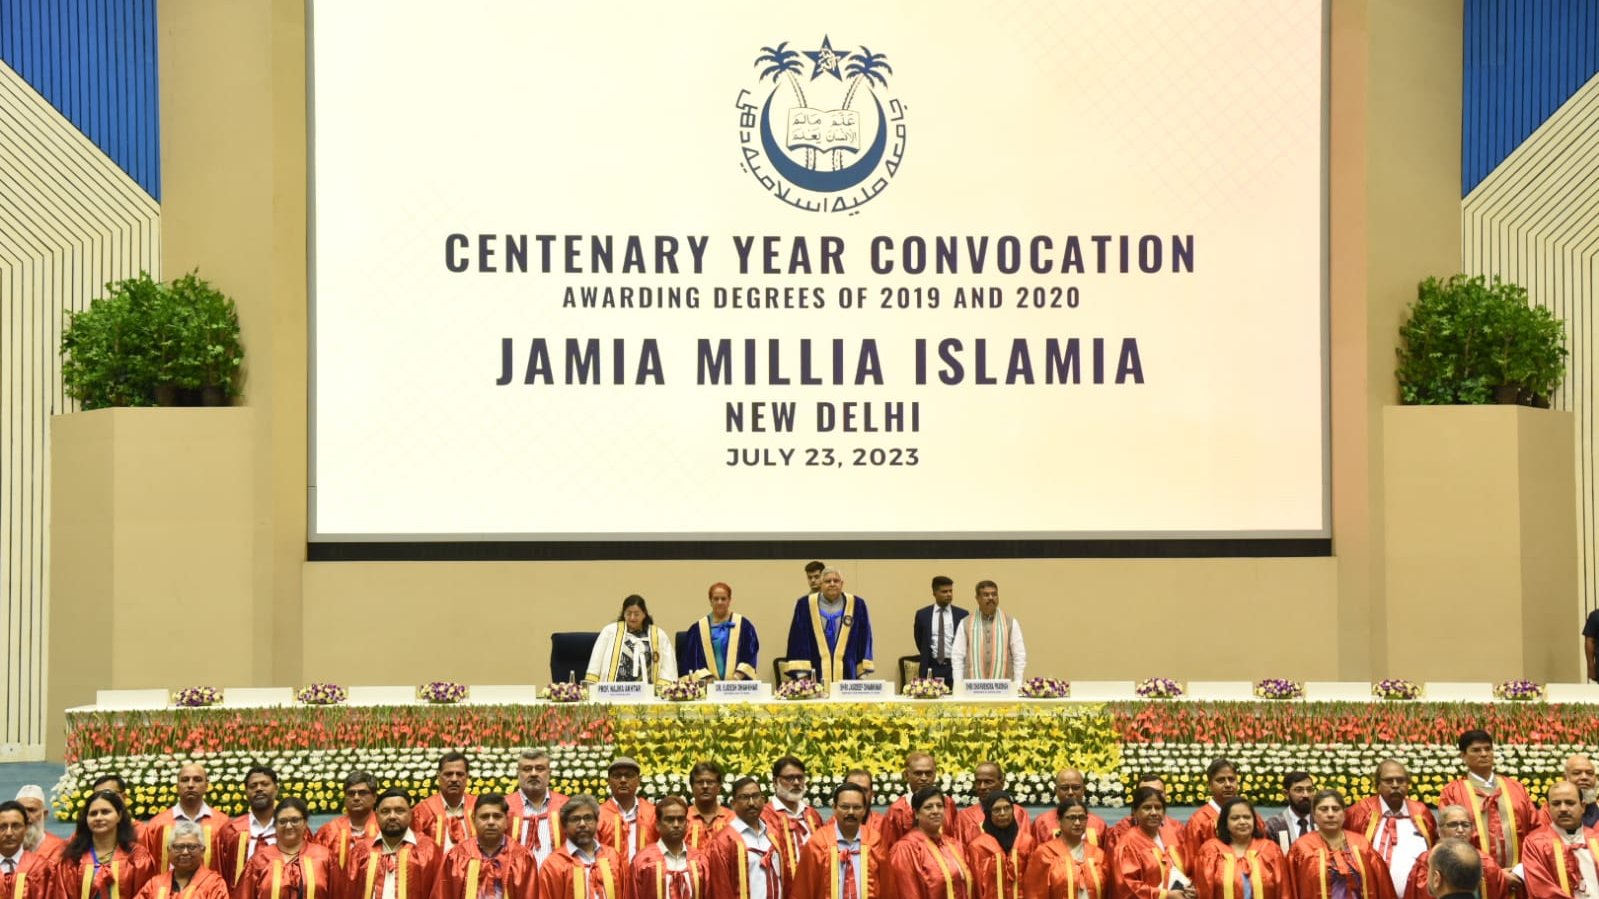 23 जुलाई 2023 को विज्ञान भवन, नई दिल्ली में जामिया मिलिया इस्लामिया के शताब्दी वर्ष दीक्षांत समारोह के दौरान उपराष्ट्रपति श्री जगदीप धनखड़ । 